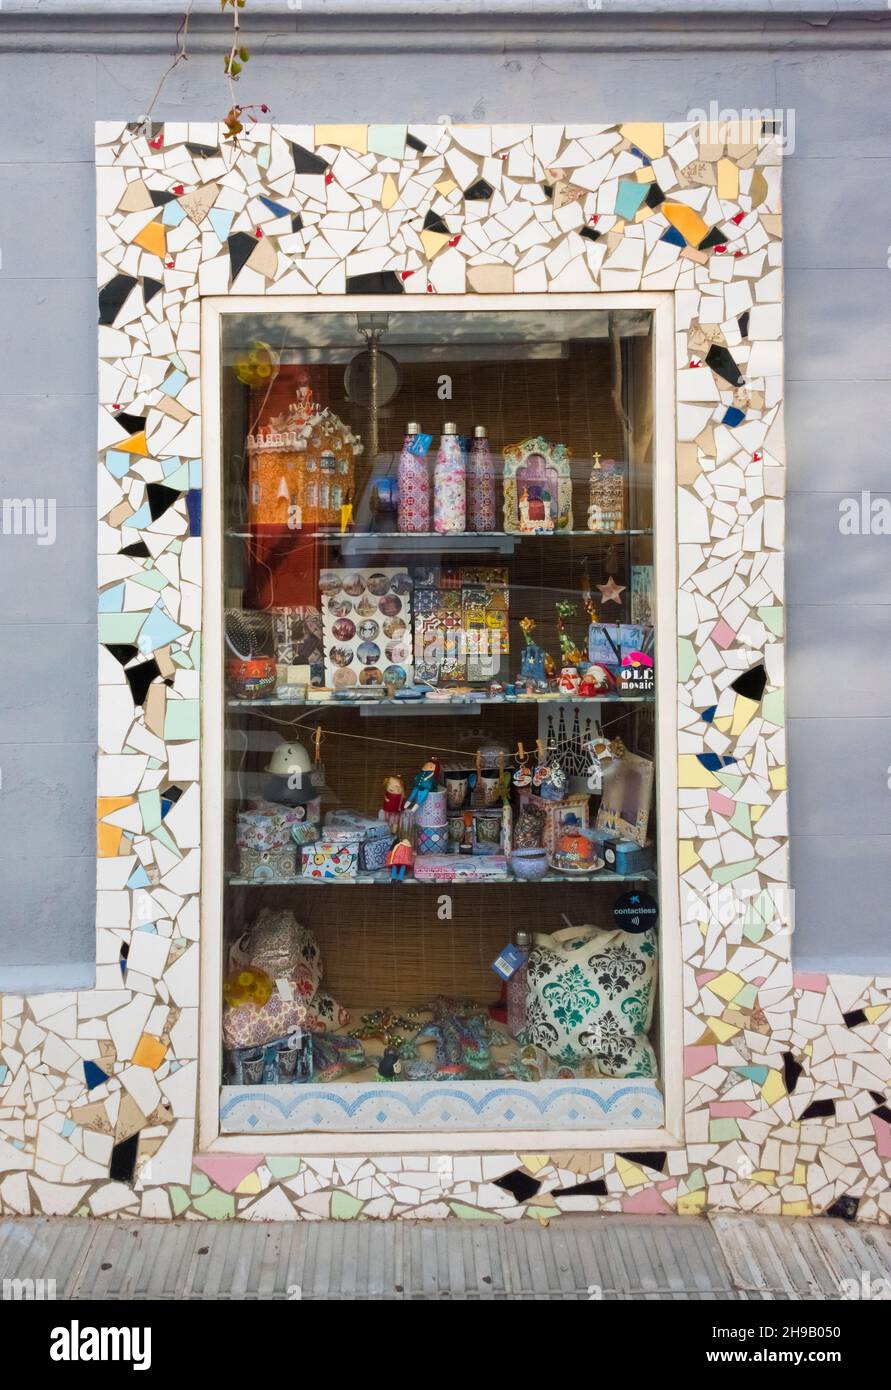 Vitrine de la boutique décorée de mosaïques, Barcelone, province de Barcelone, Communauté autonome de Catalogne, Espagne Banque D'Images